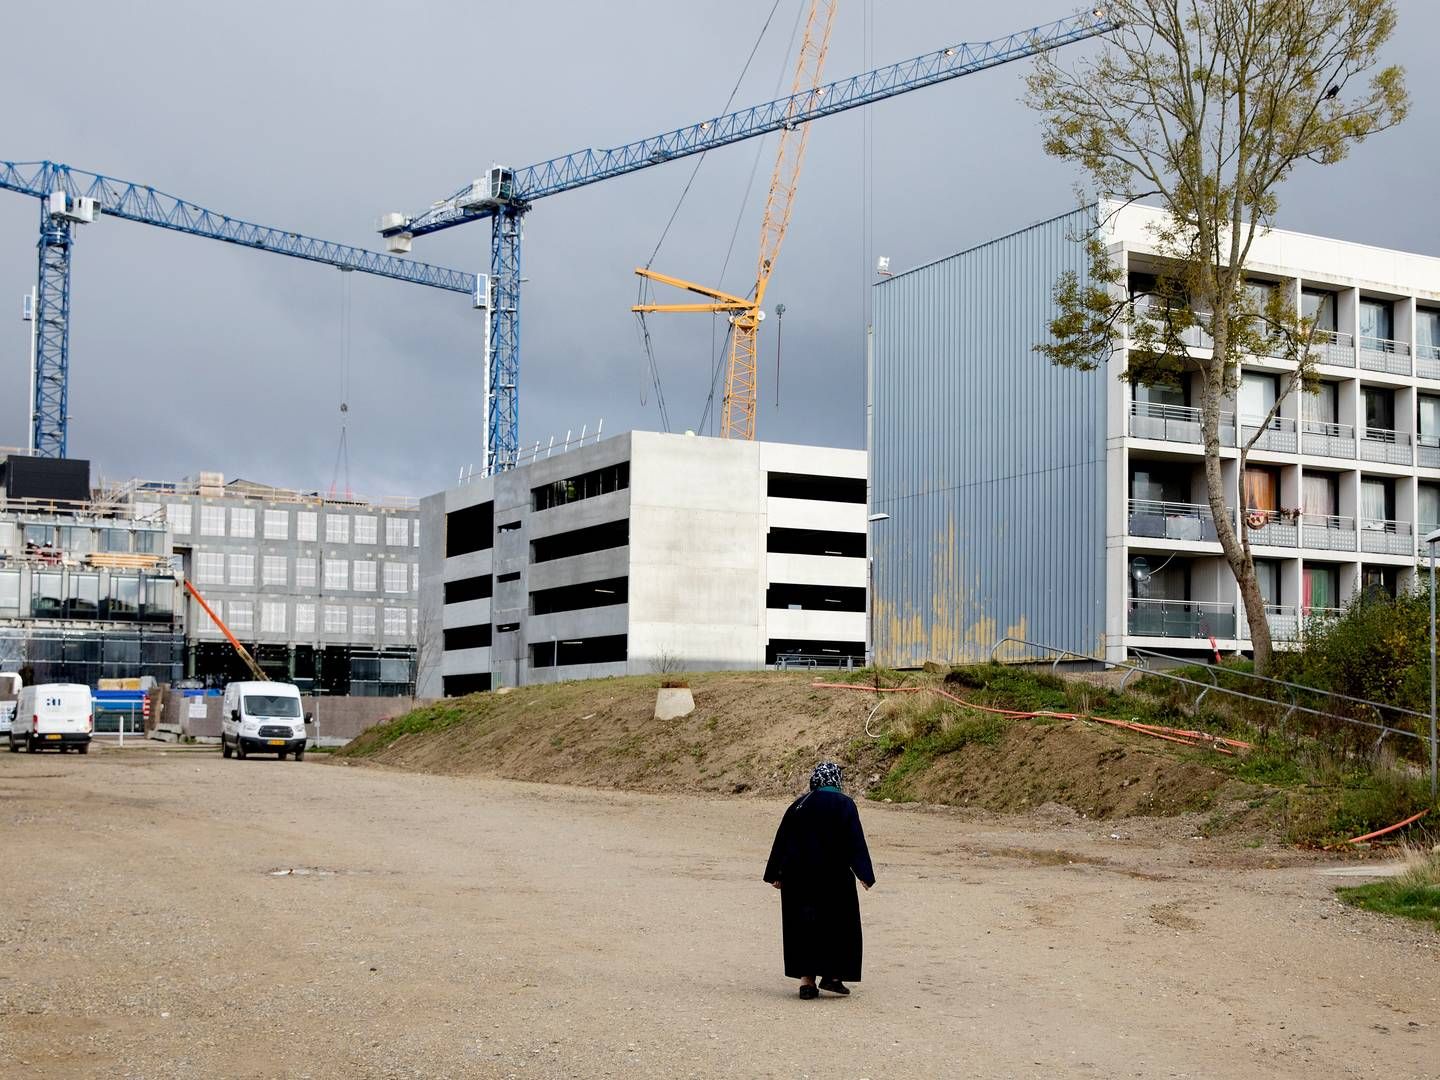 Sidste sommer vedtog Aarhus Byråd og Brabrand Boligforening en ny helhedsplan for Gellerupparken. Planen indebærer, at alle kvarterer bliver udbygget og omdannet, så det ikke længere fremstår som et samlet boligområde. | Foto: Finn Frandsen/Politiken/Ritzau Scanpix